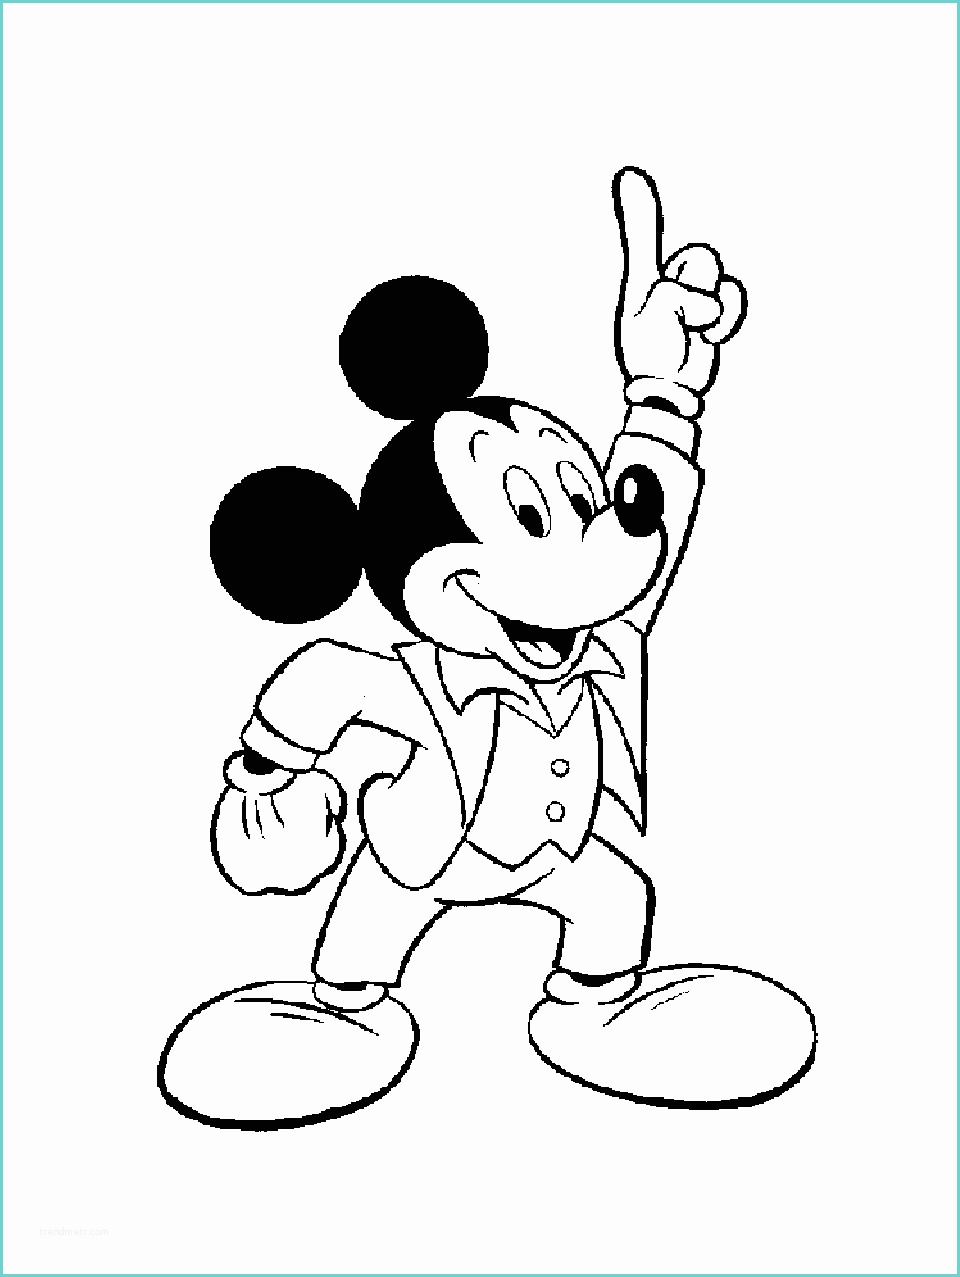 Dessin Tete De Mickey Mickey Travolta Coloriage Mickey Coloriages Pour Enfants